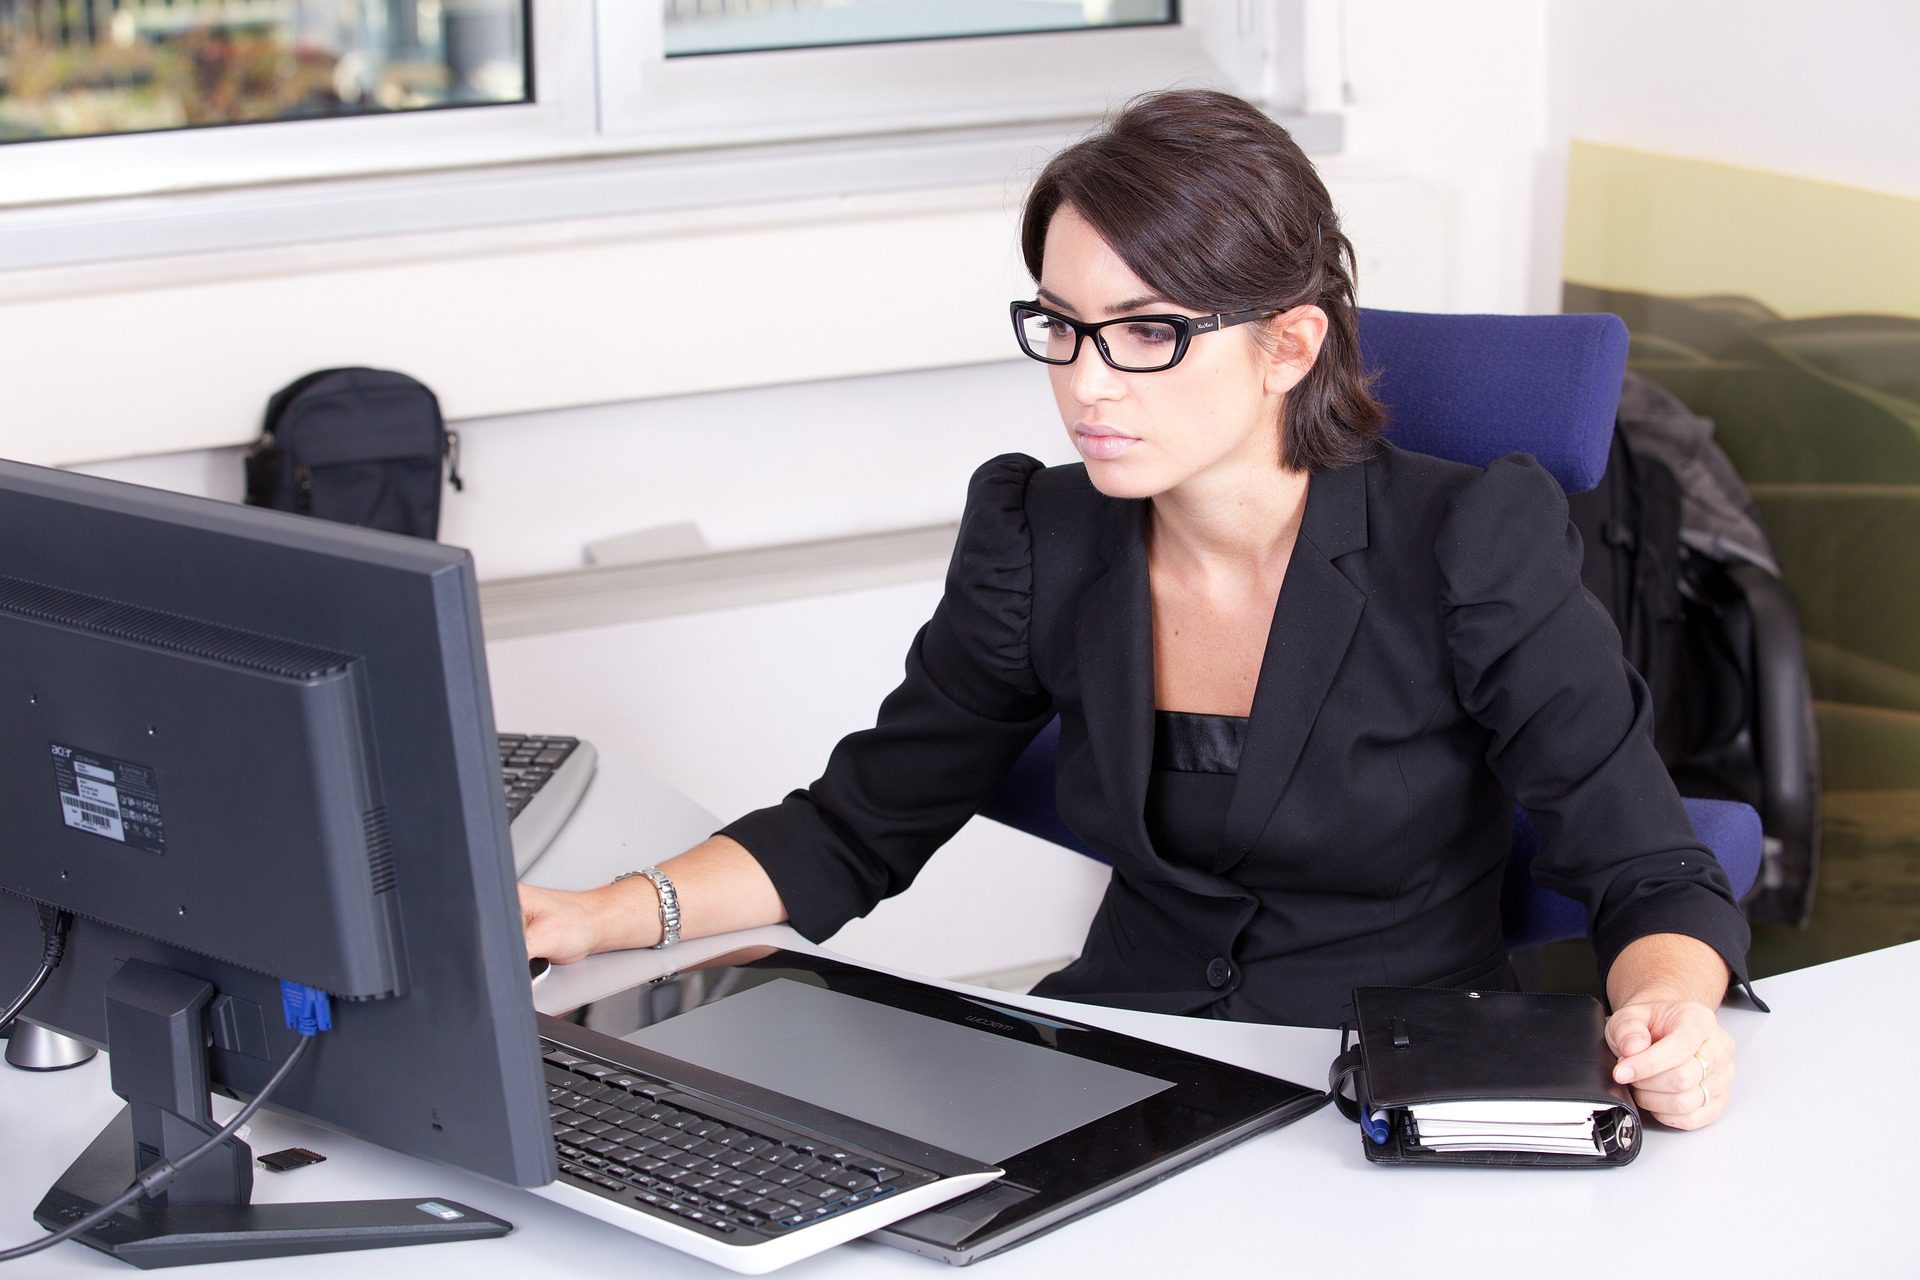 Secretary working in front of a desktop